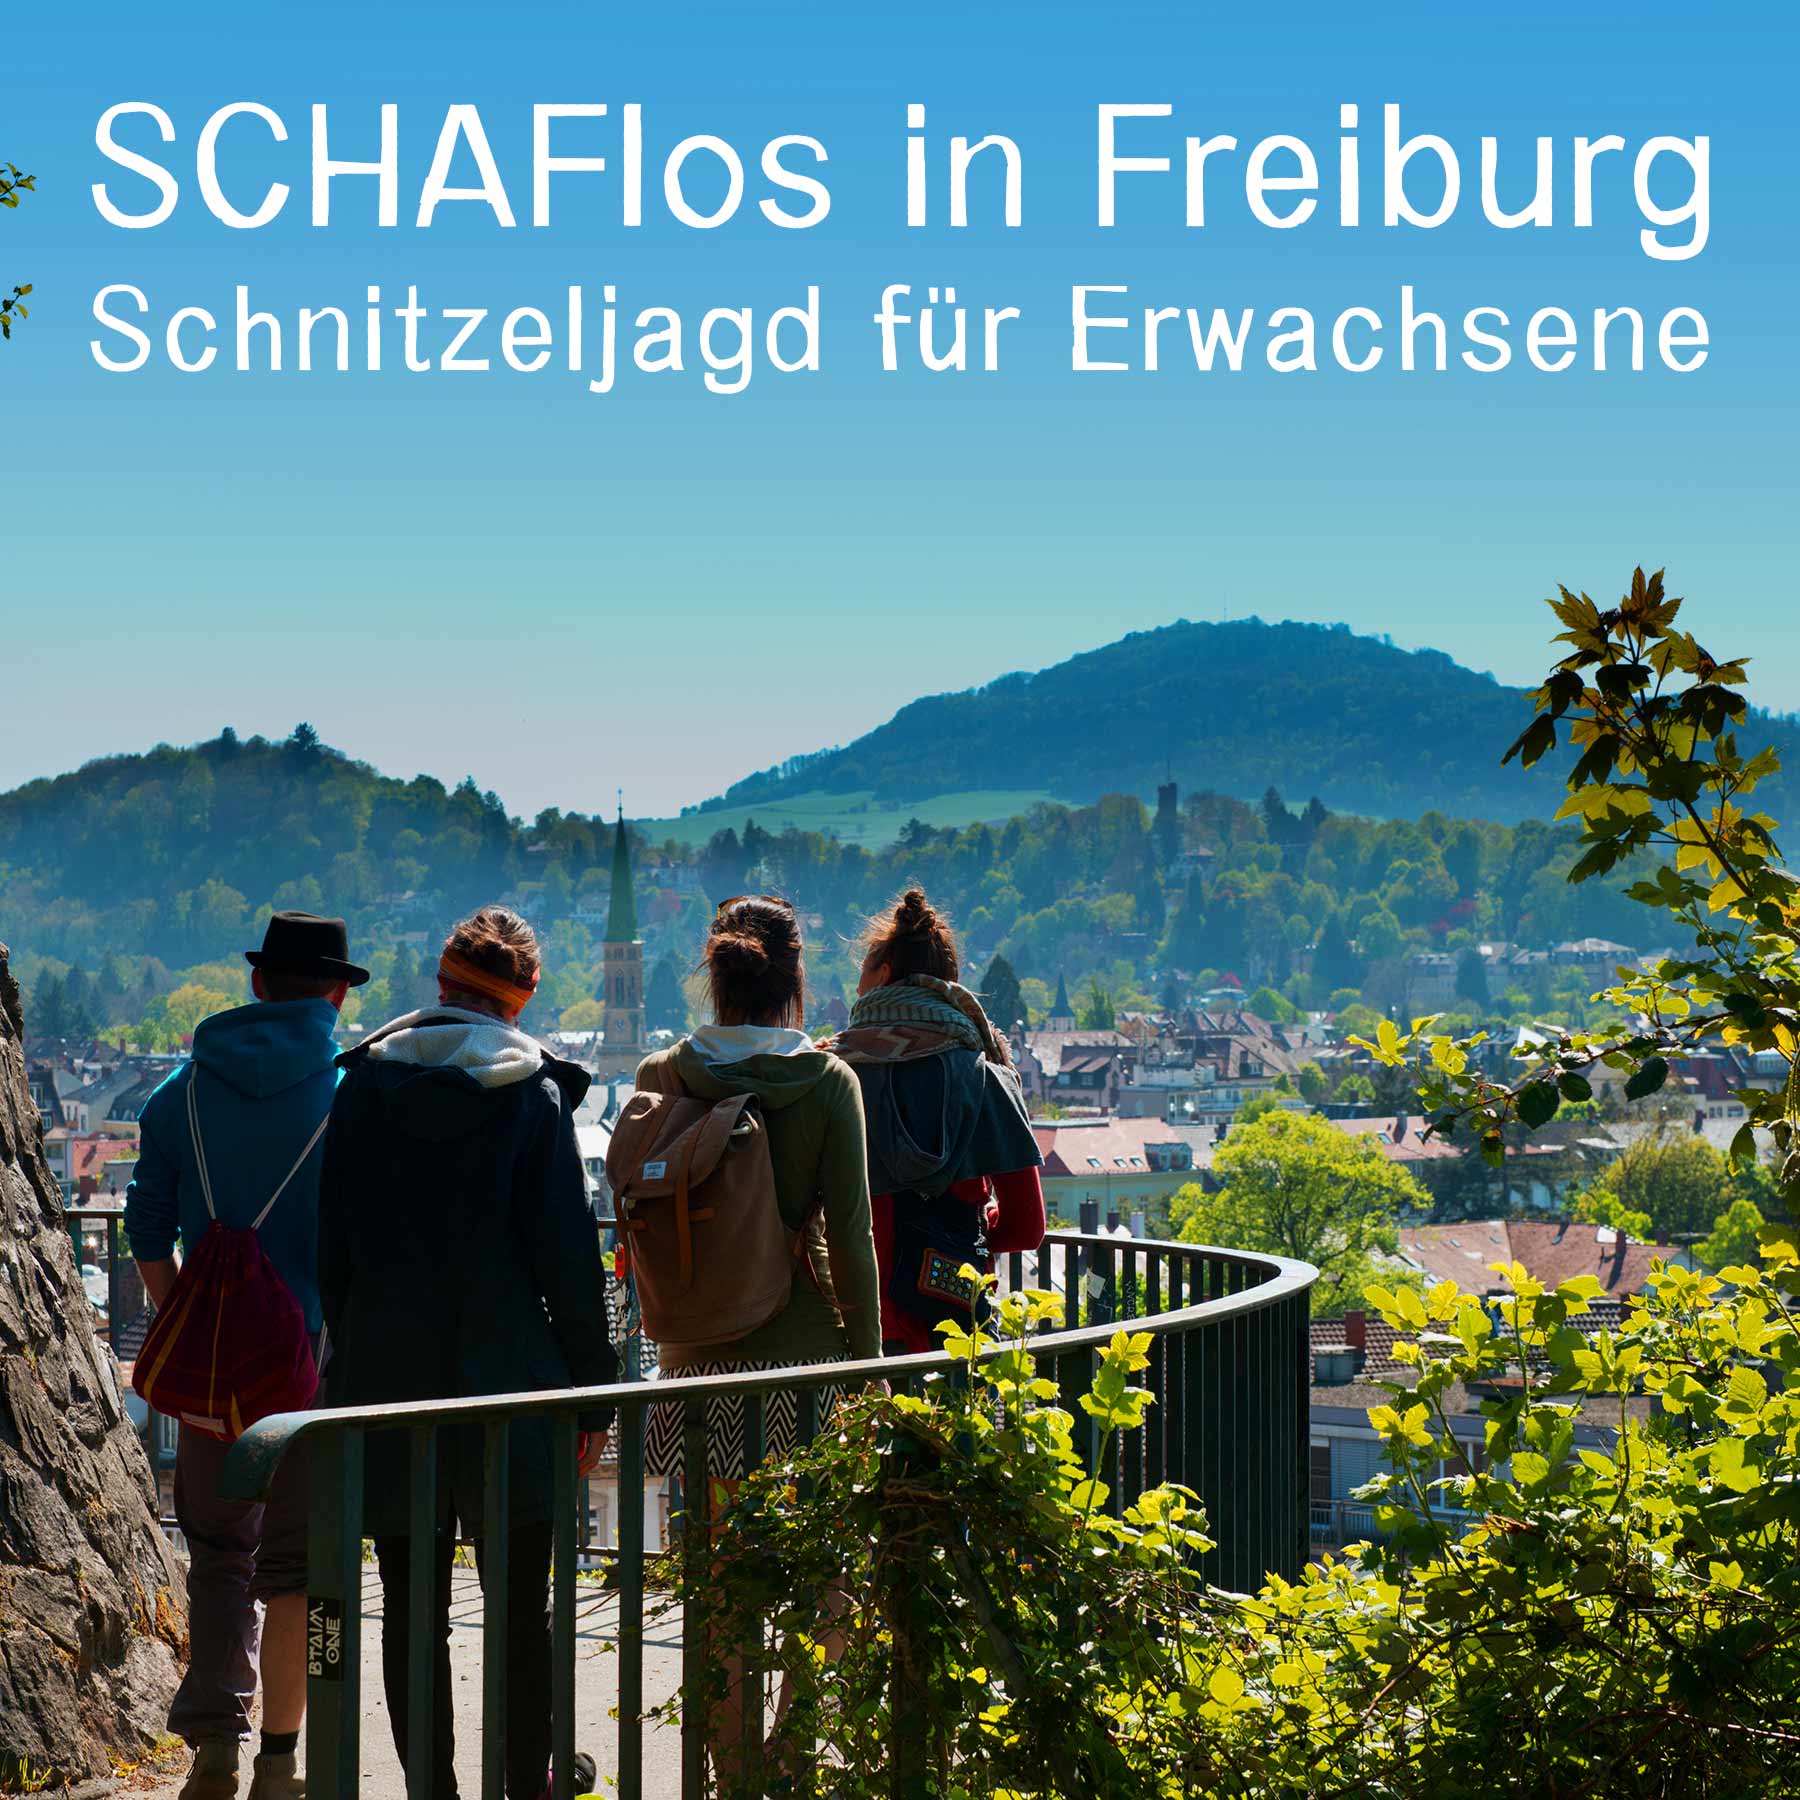 schaflos in freiburg schnitzeljagd deluxe online ticket